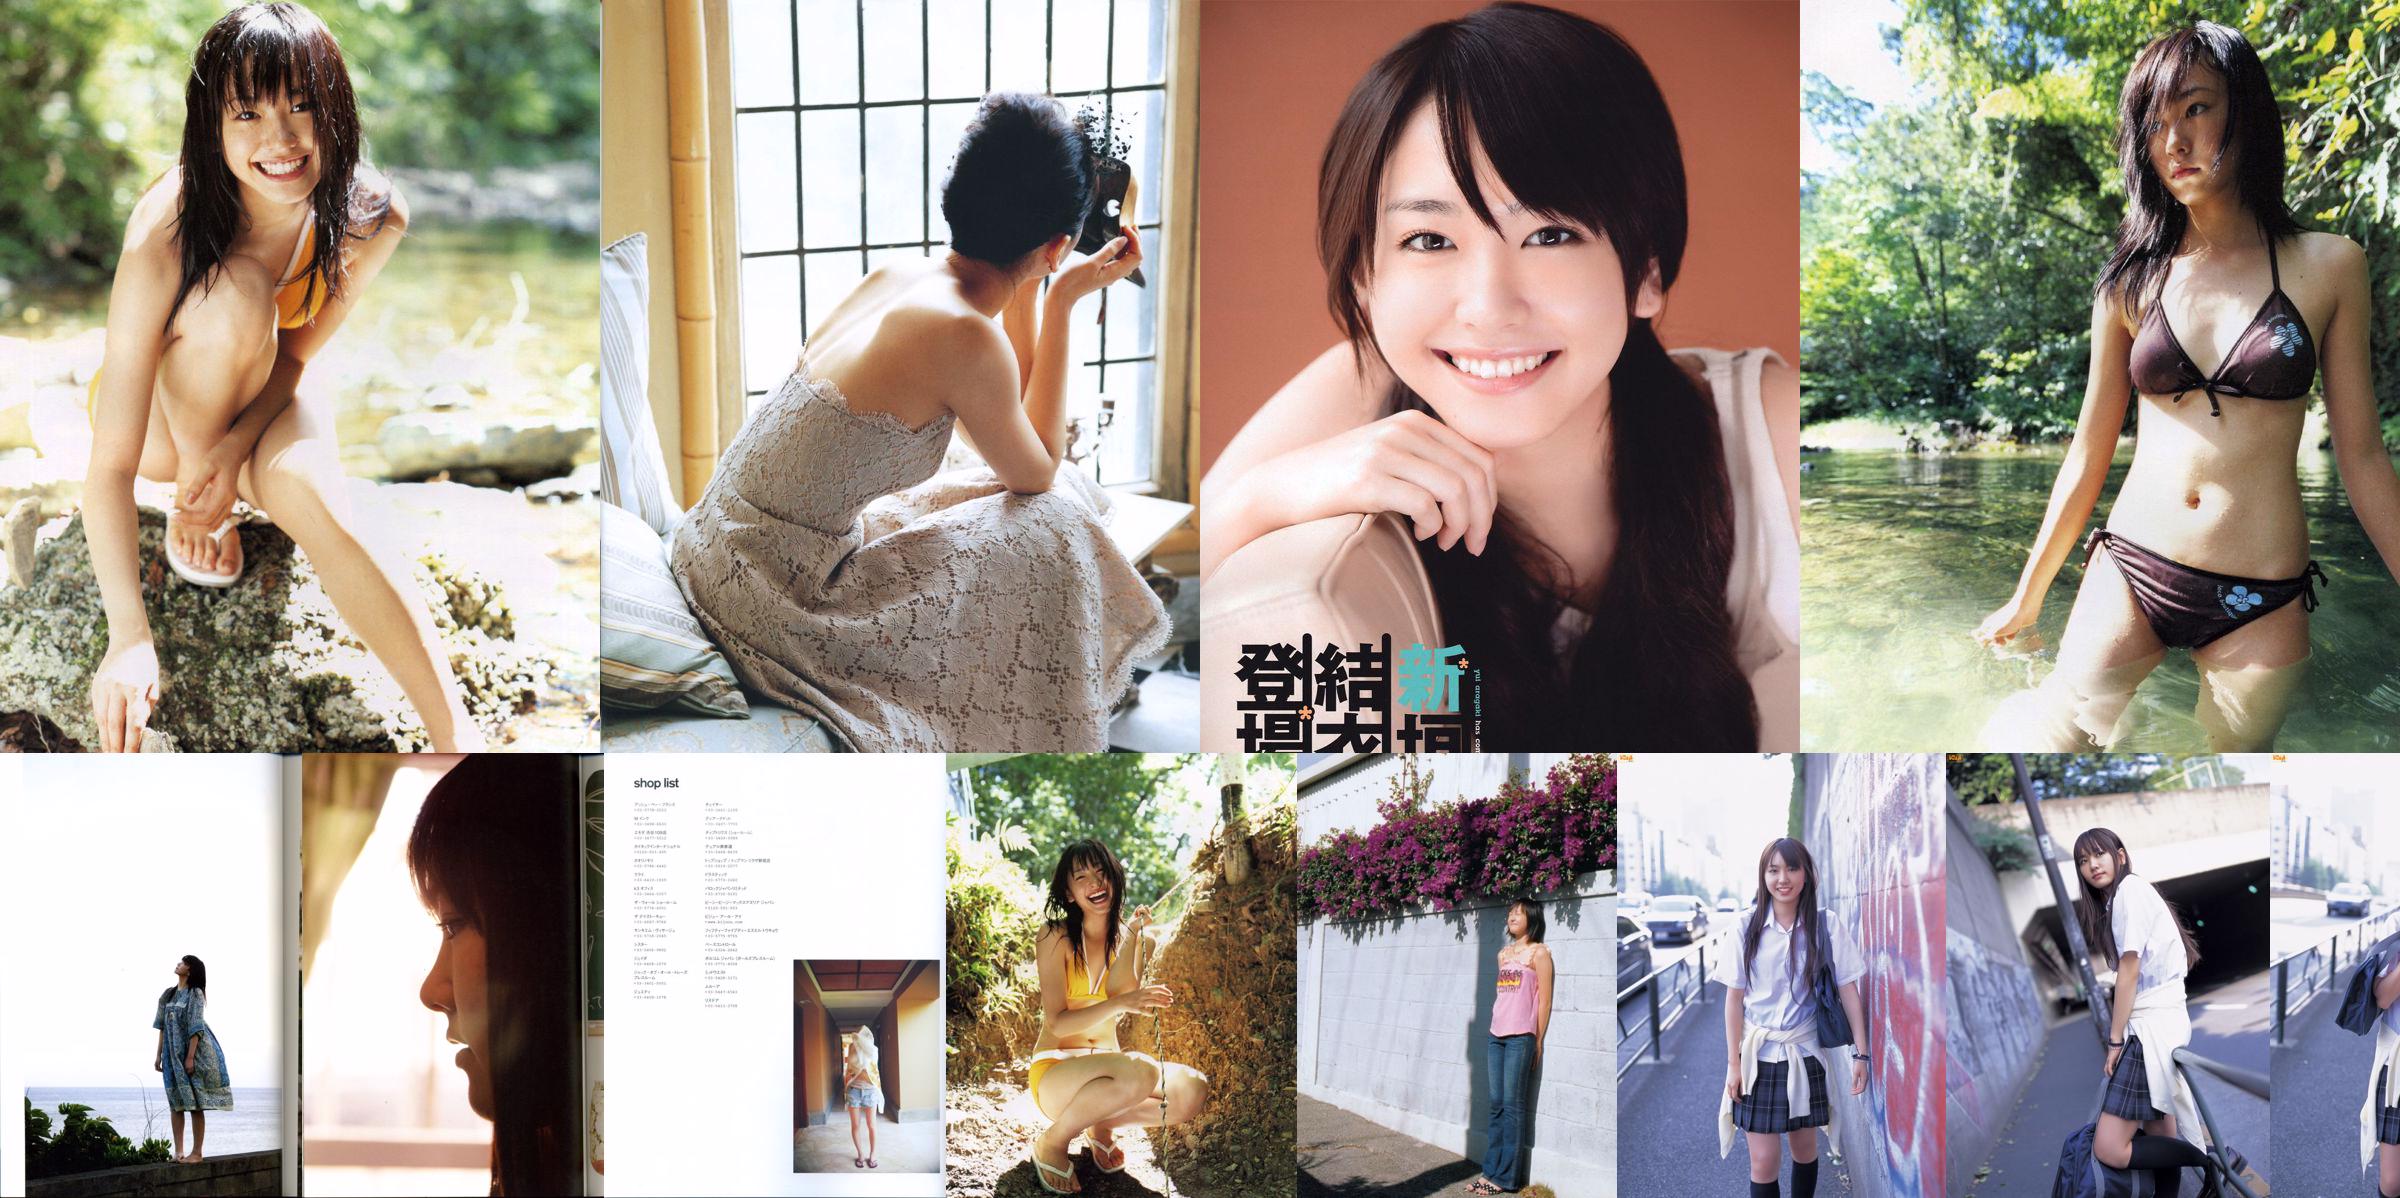 Yui Aragaki "Fashion Photo Magazine 2012" No.6d43b1 Pagina 50